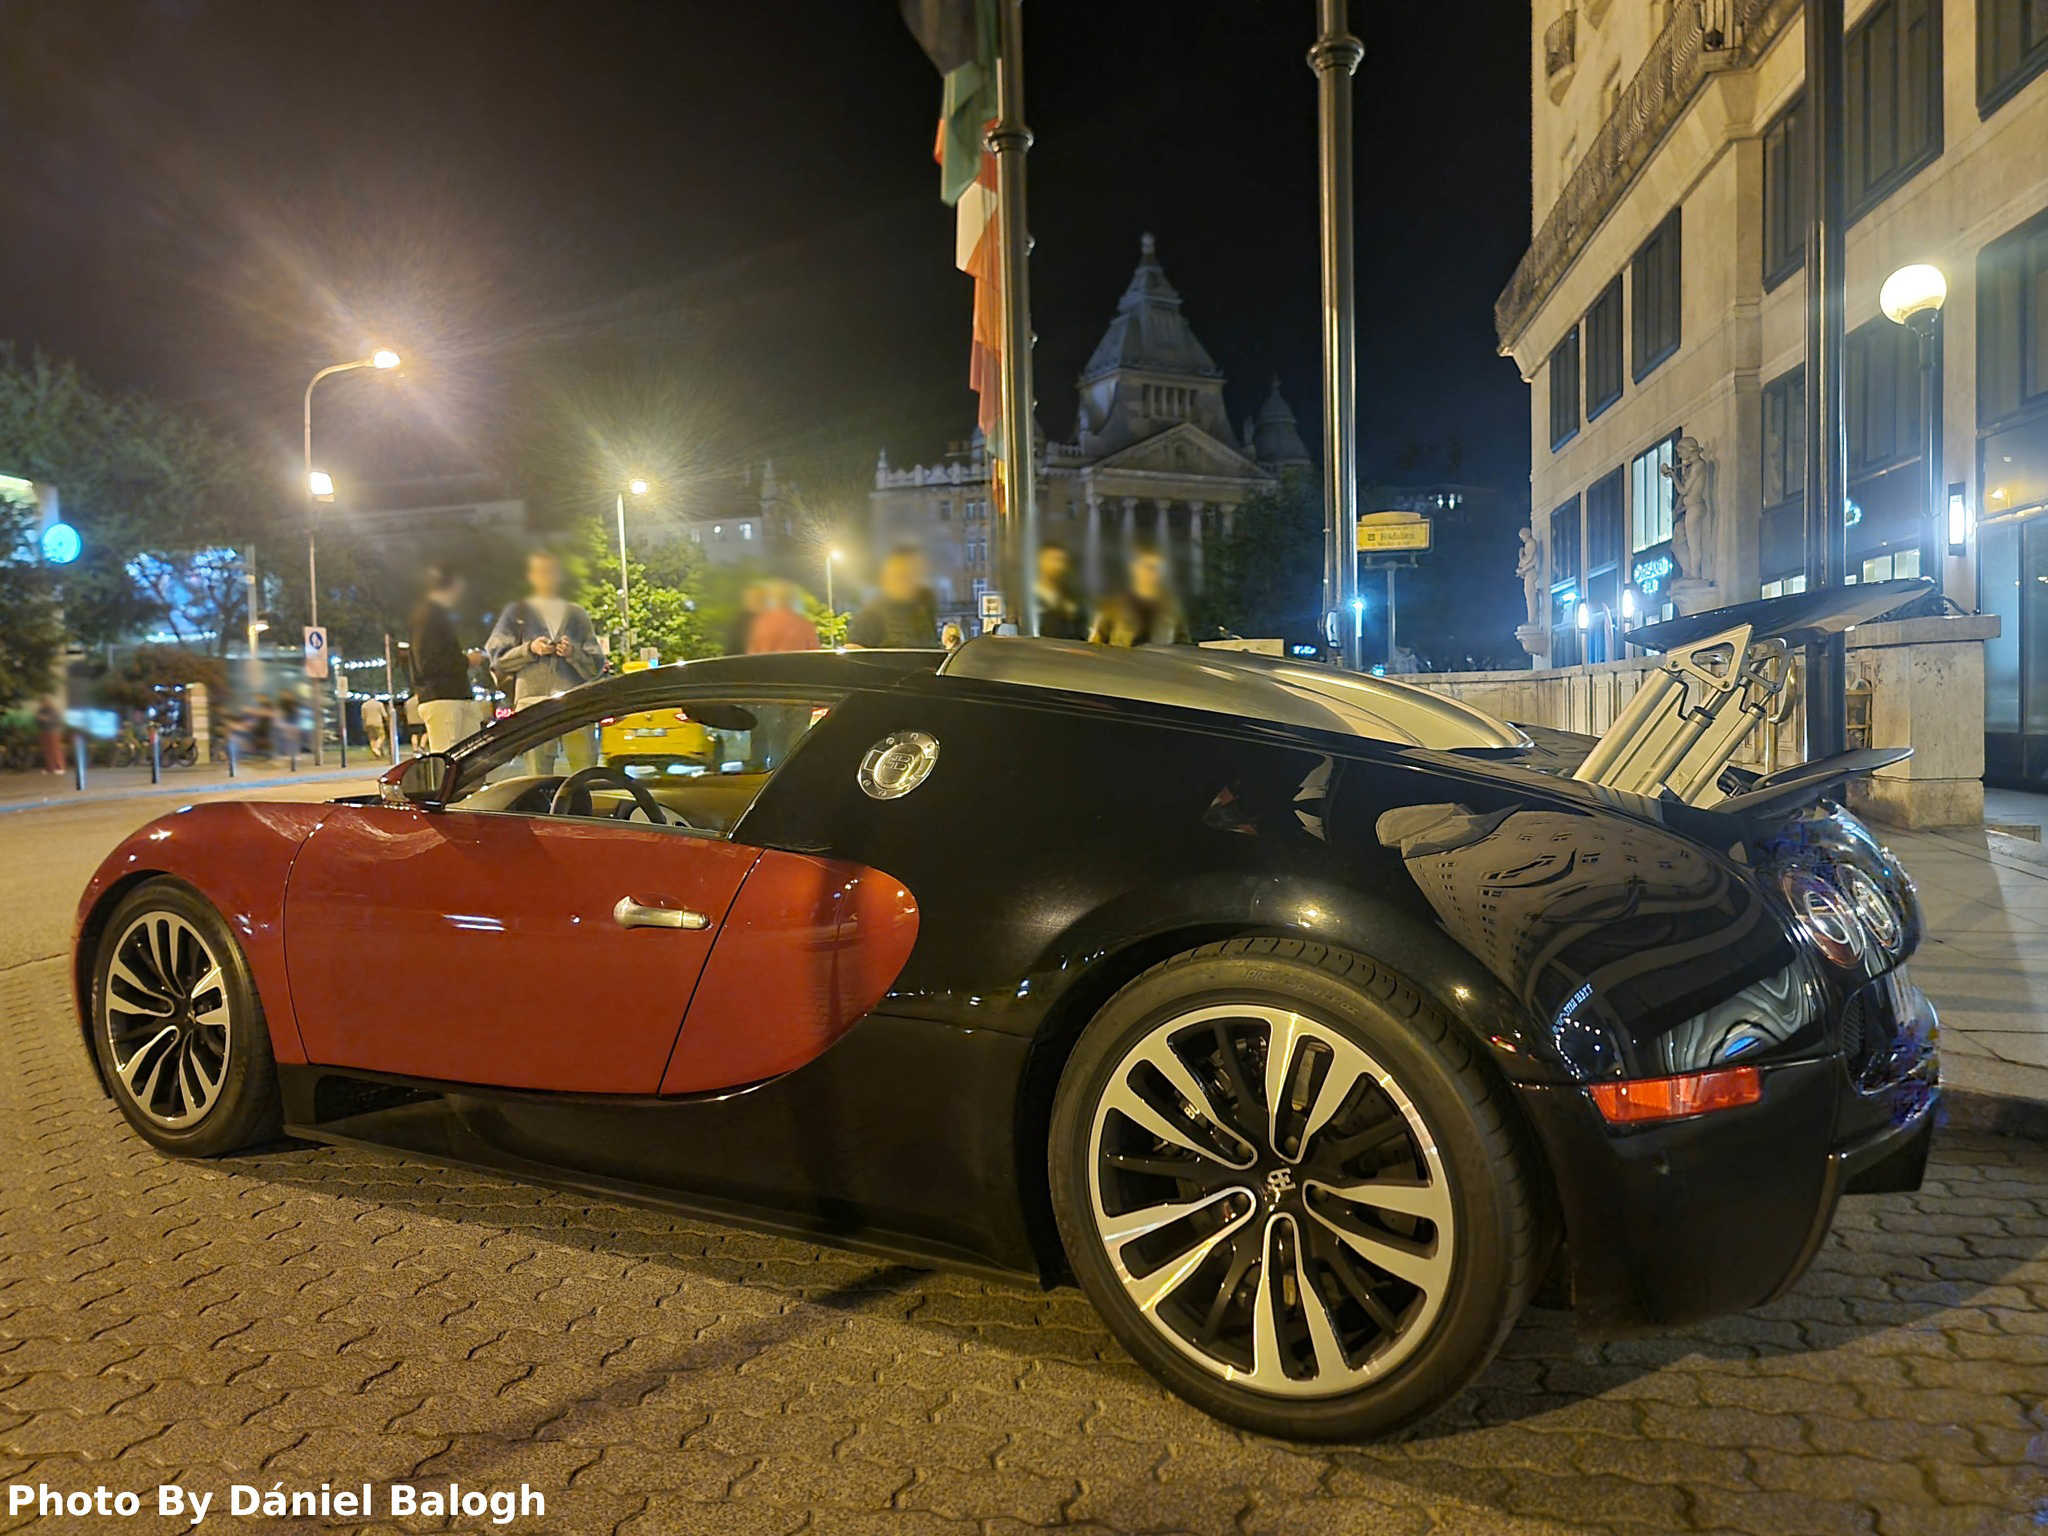 Un coche raro y caro está aparcado delante de un hotel en Budapest. ¿Lo has visto?  1